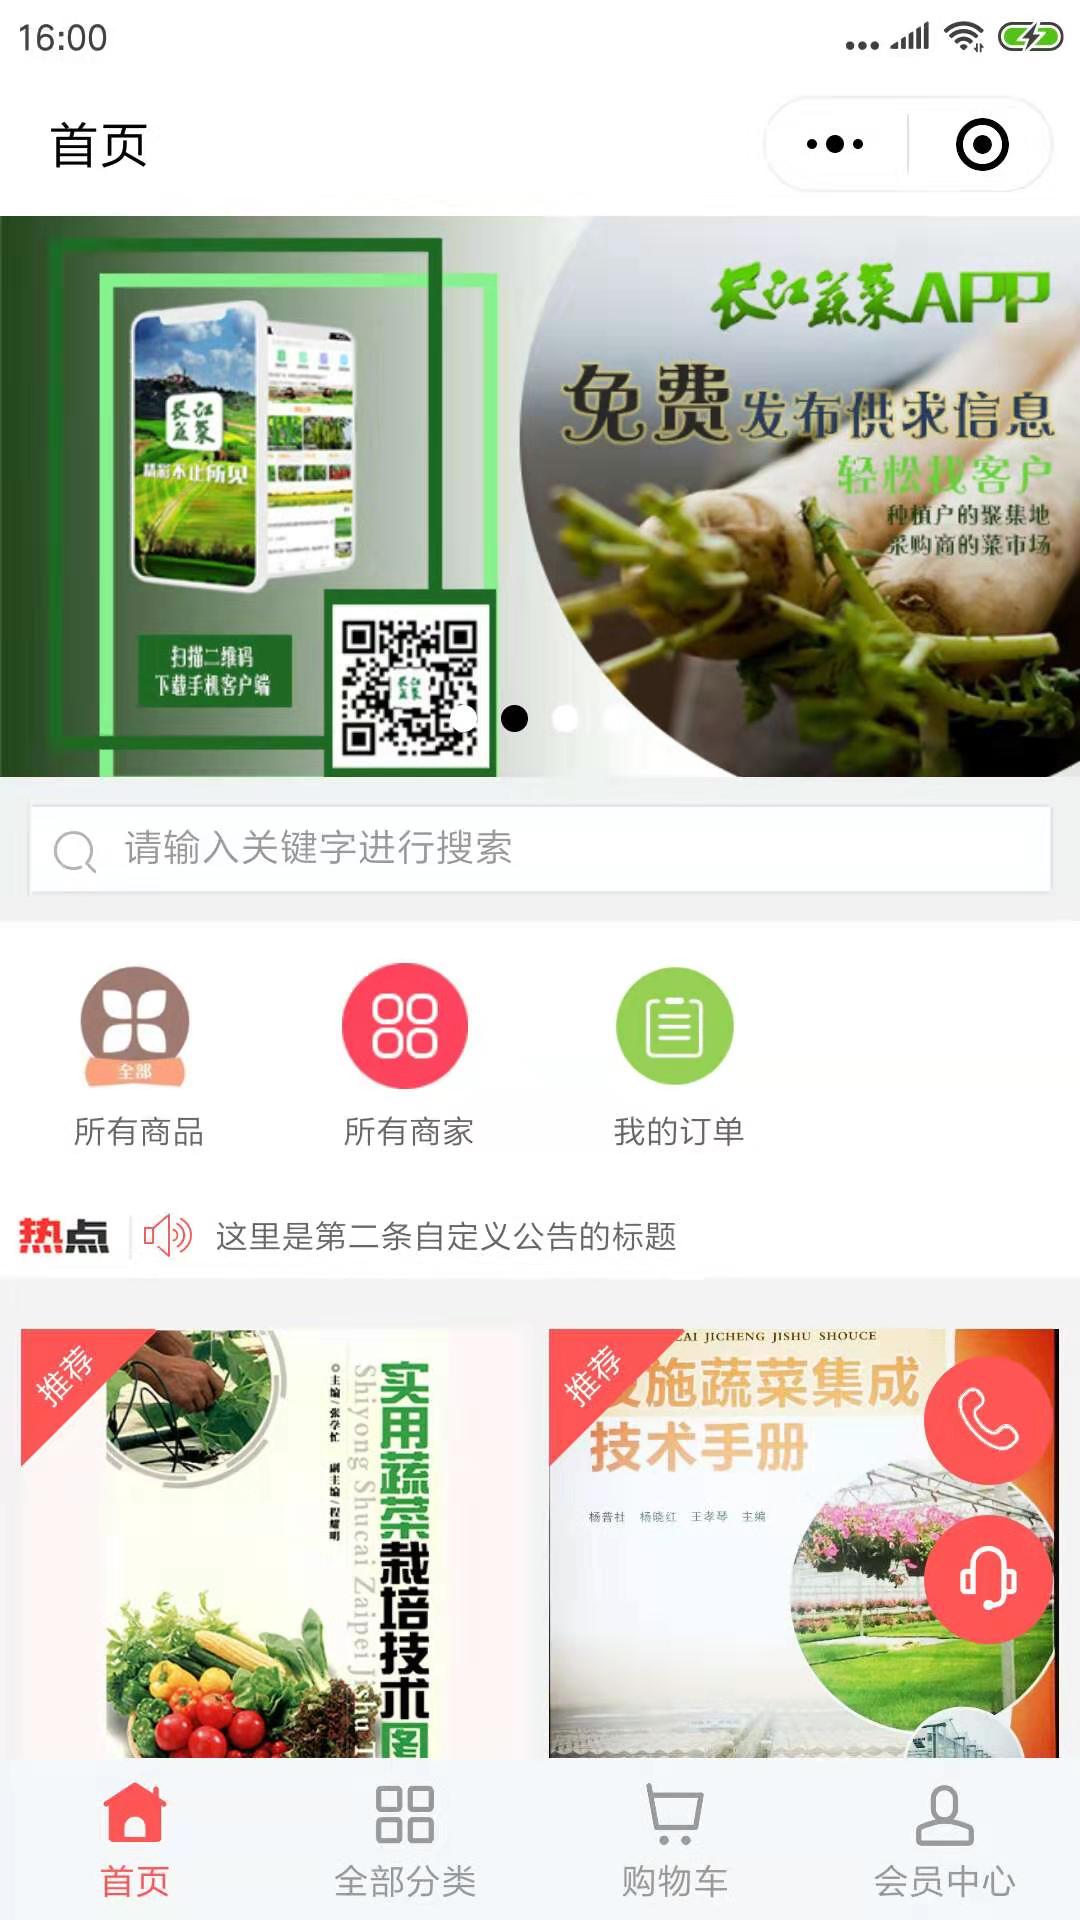 长江蔬菜商城_长江蔬菜商城小程序_长江蔬菜商城微信小程序